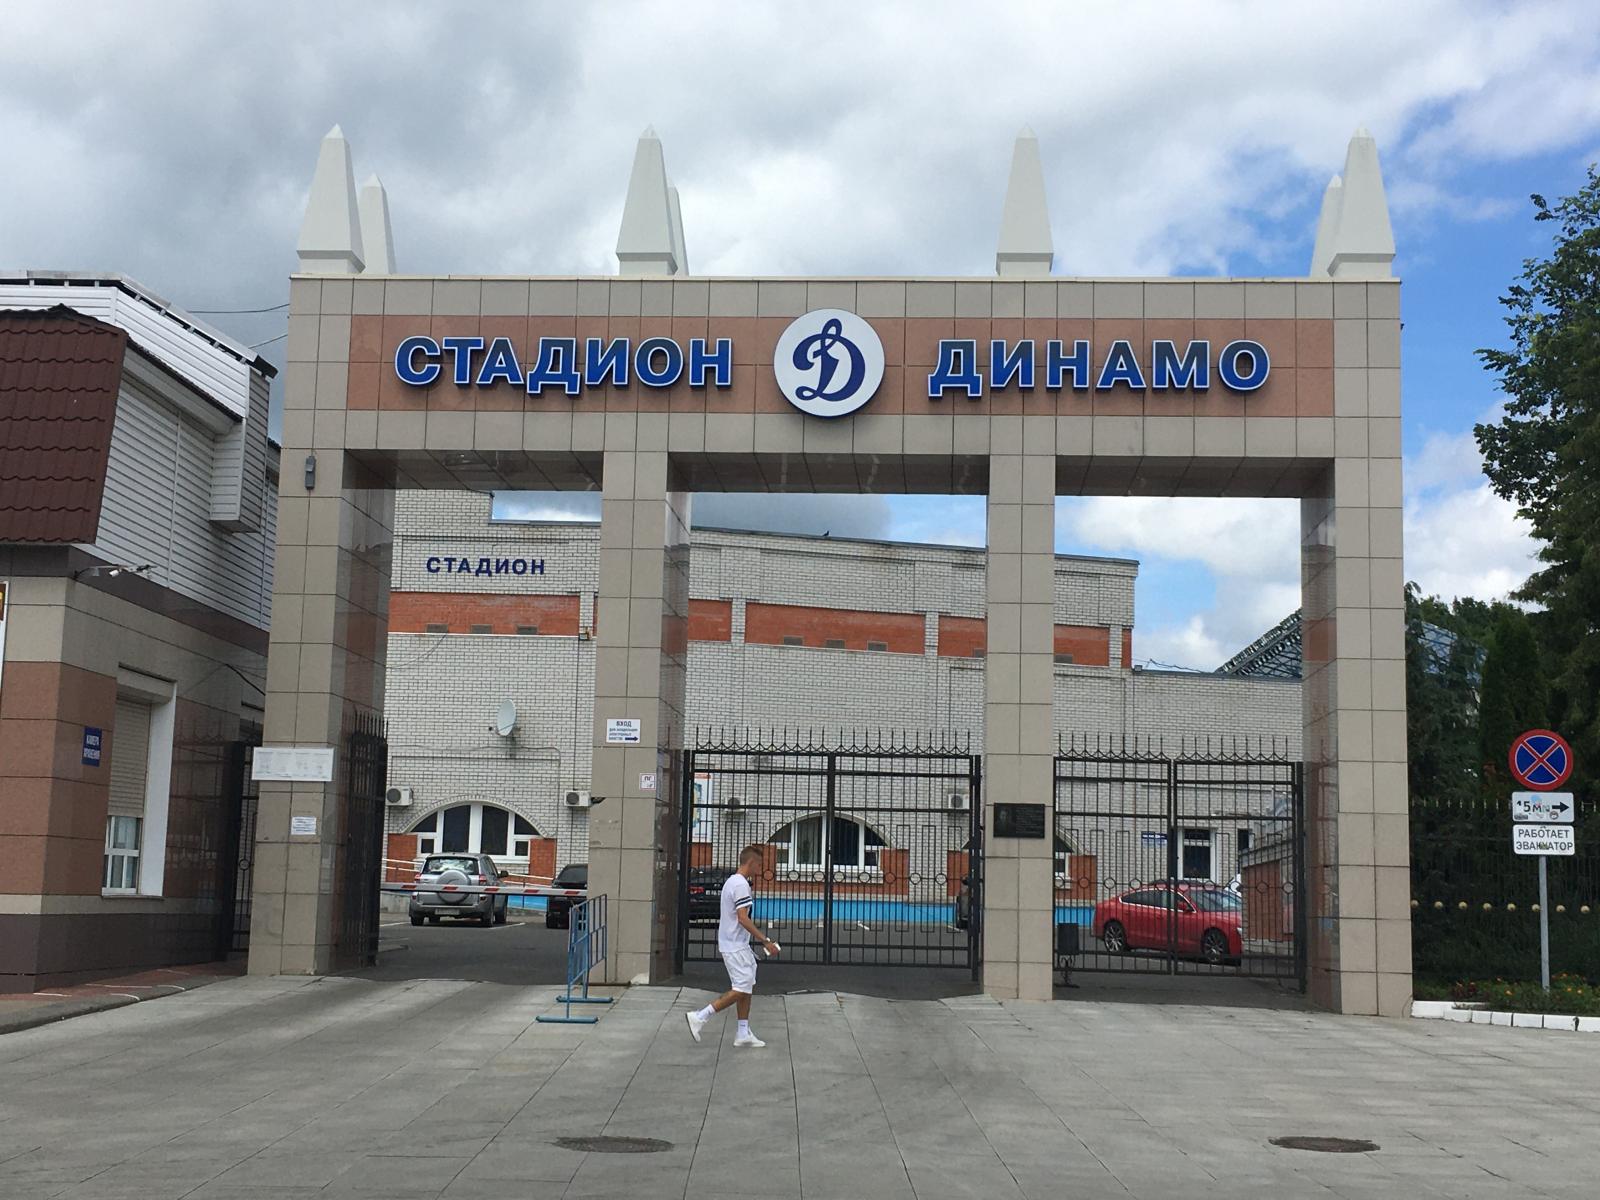 Команда «Динамо» из Брянска проиграла шестой раз подряд и оказалась в «зоне вылета»